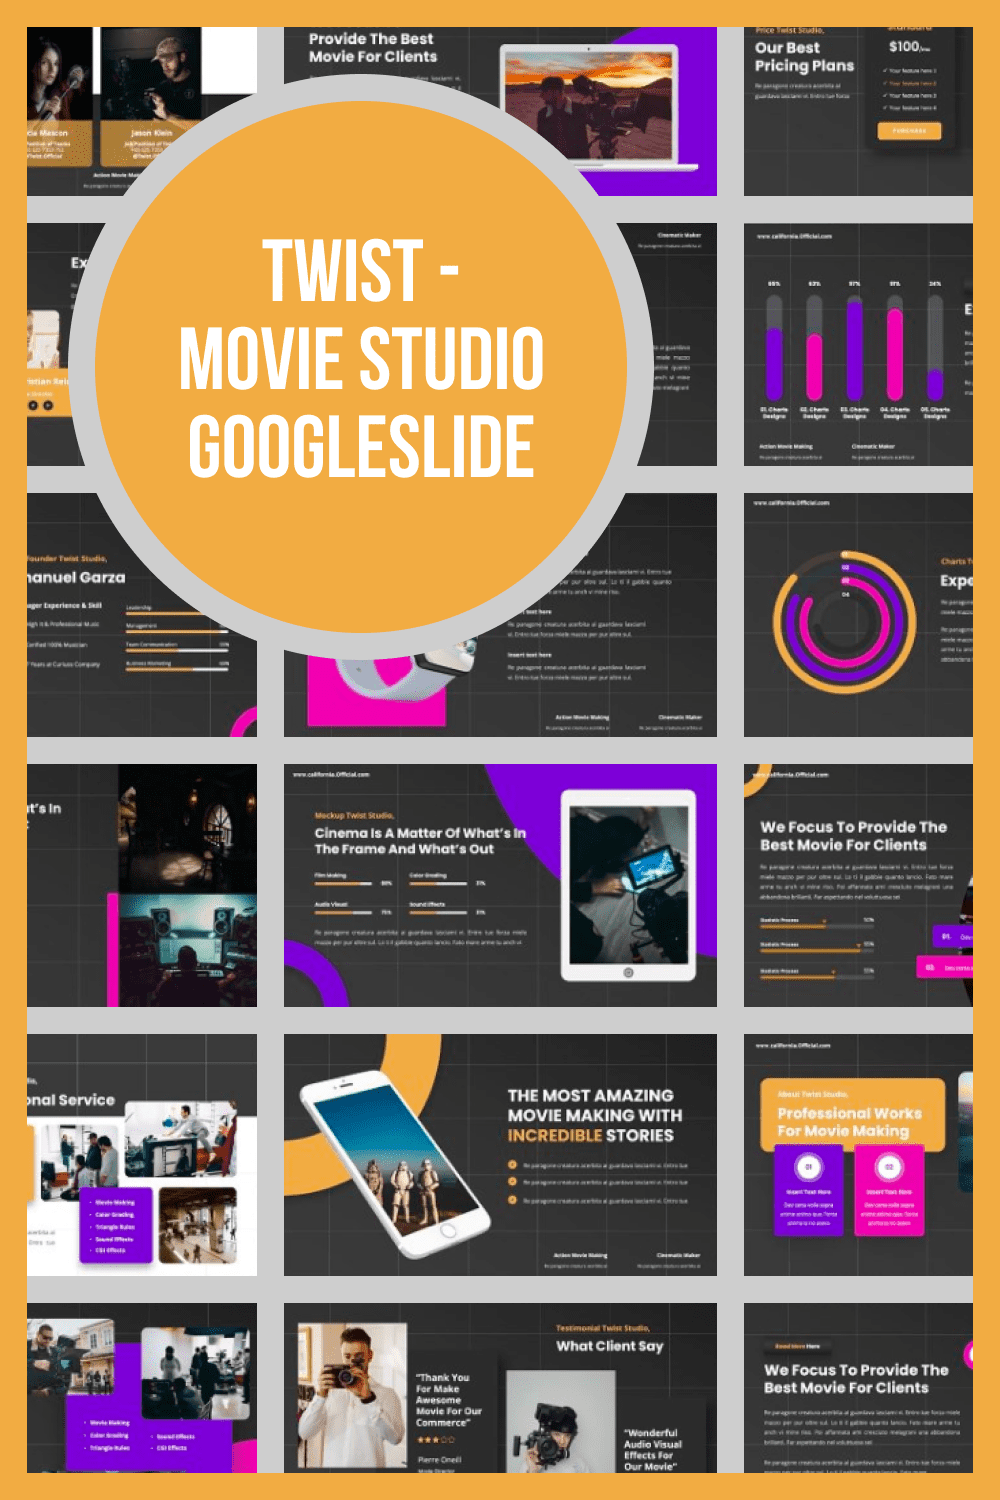 Twist - Movie Studio Googleslide by MasterBundles Pinterest Collage Image.